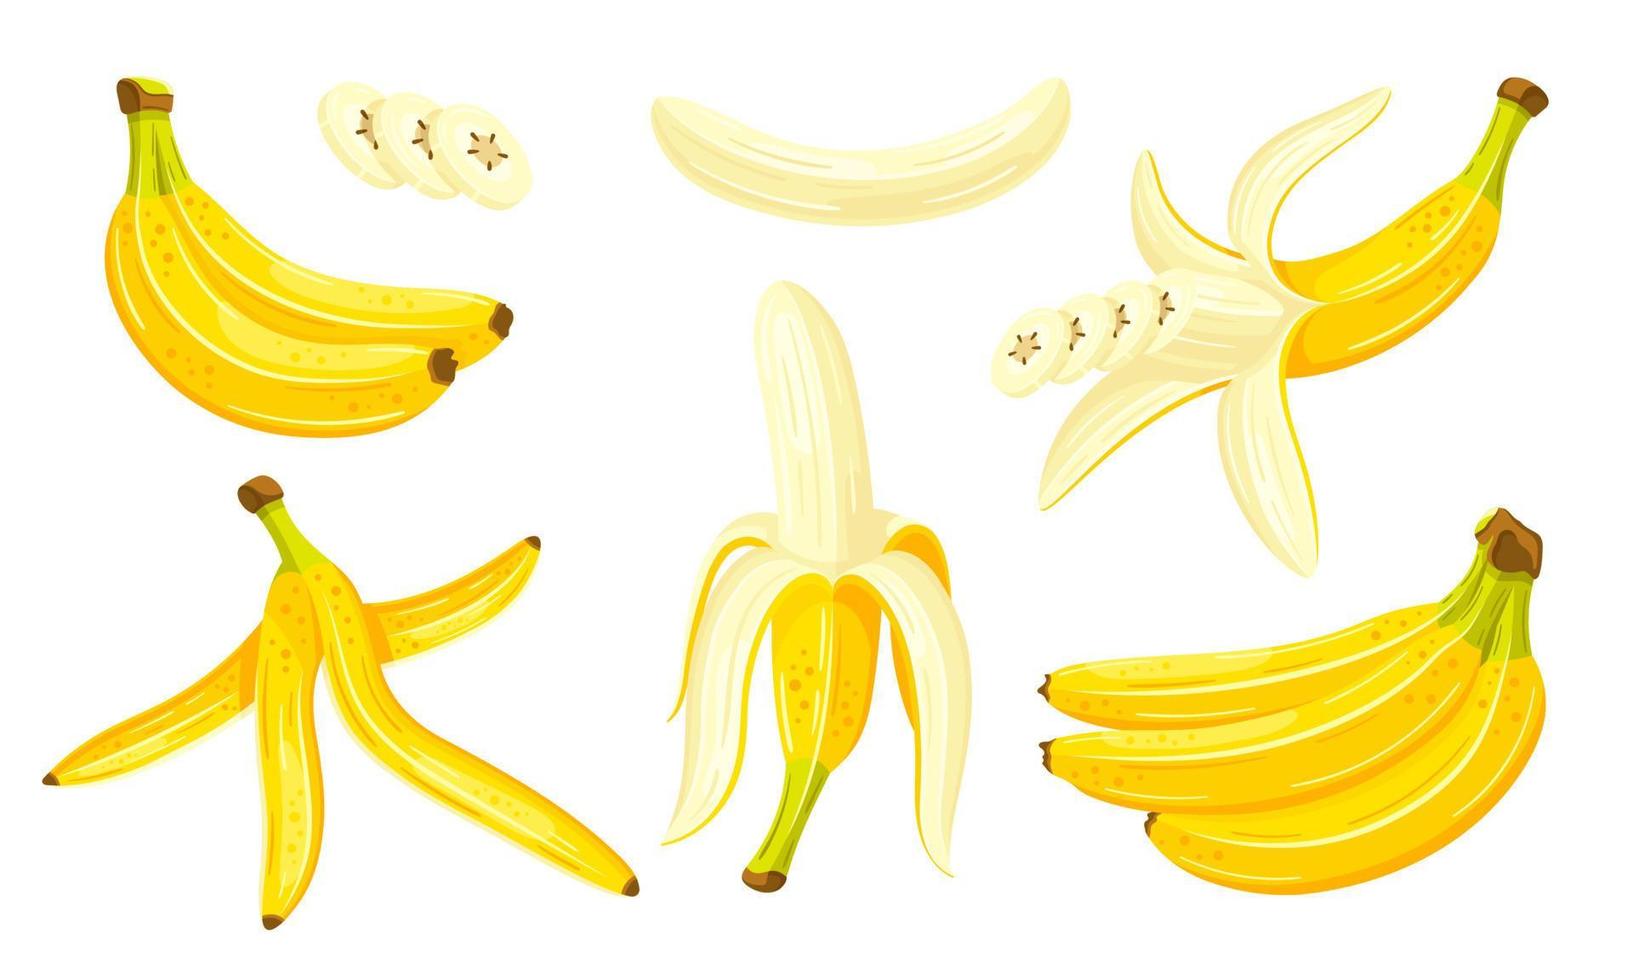 belle banane in stile cartone animato. design piatto. set di banane gialle isolate su uno sfondo bianco. illustrazione vettoriale